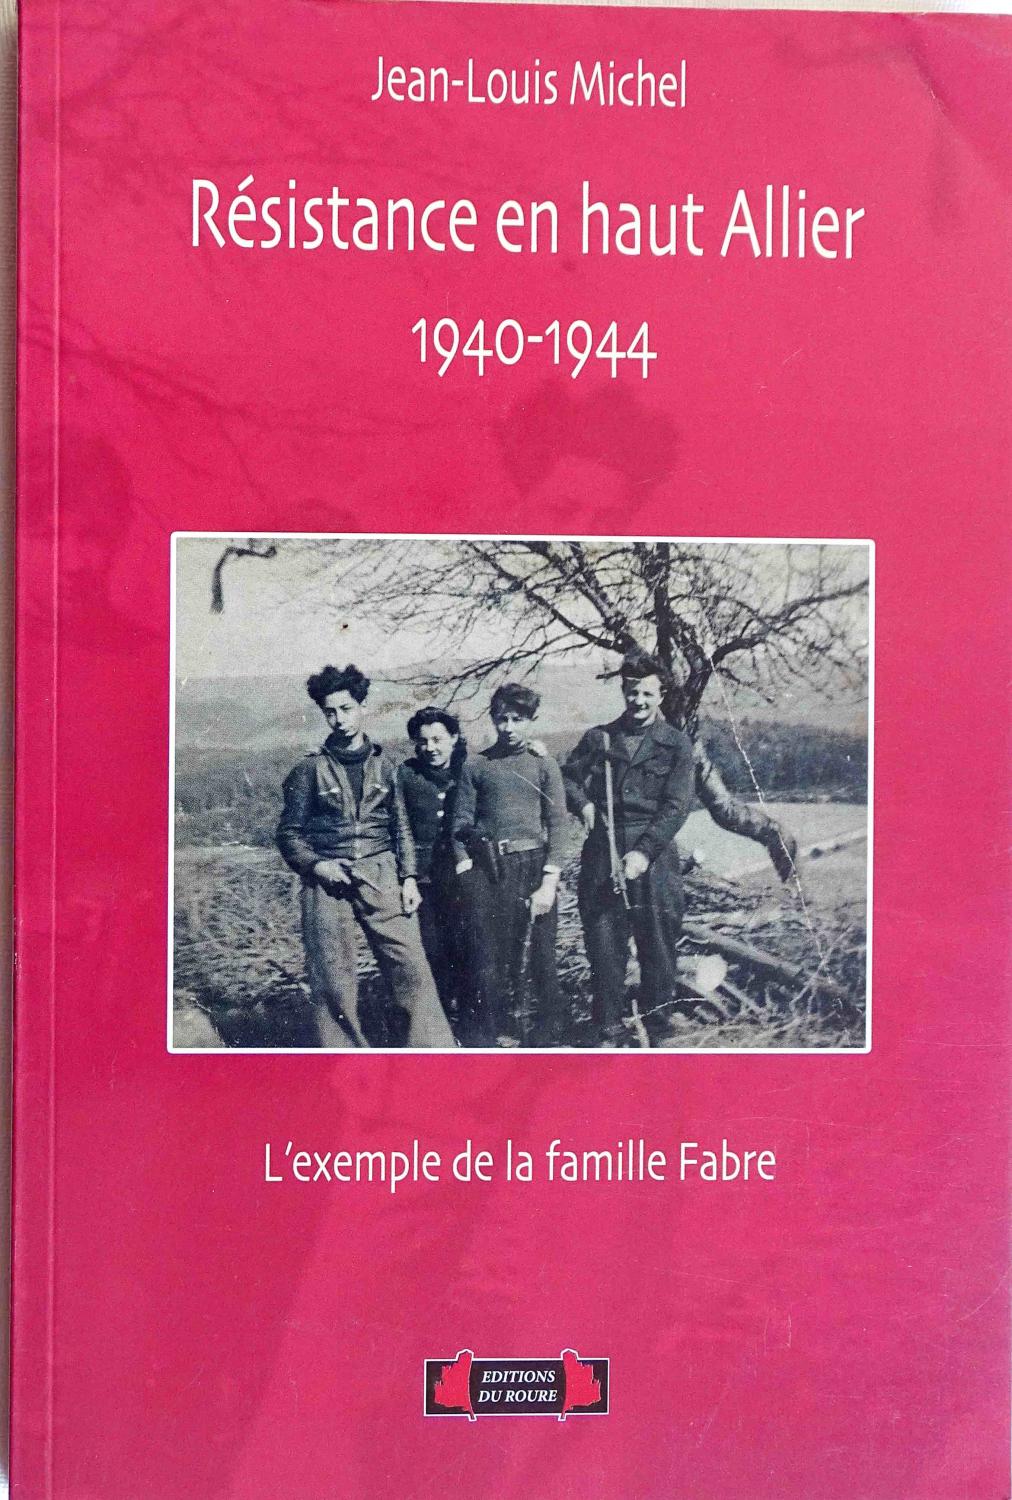 R&eacute;sistance en haut Allier 1940-1944  L&#039;exemple de la famille Fabre. Jean Louis Michel